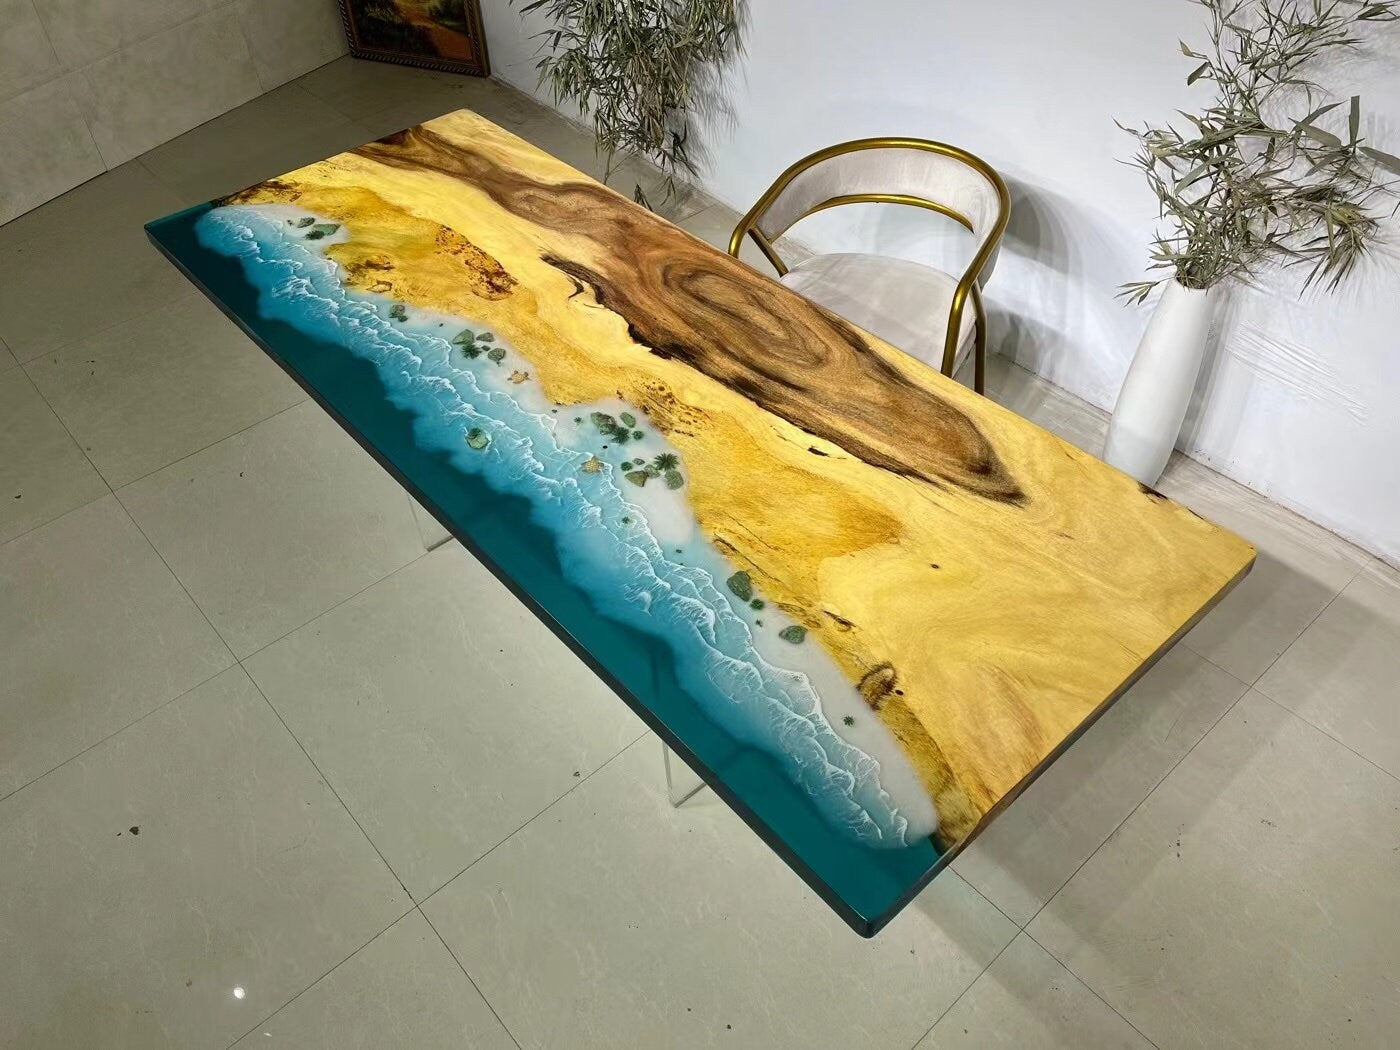 nye blå hav flod moderne blå hav spisestue møbler træ valnød Epoxy Resin bord